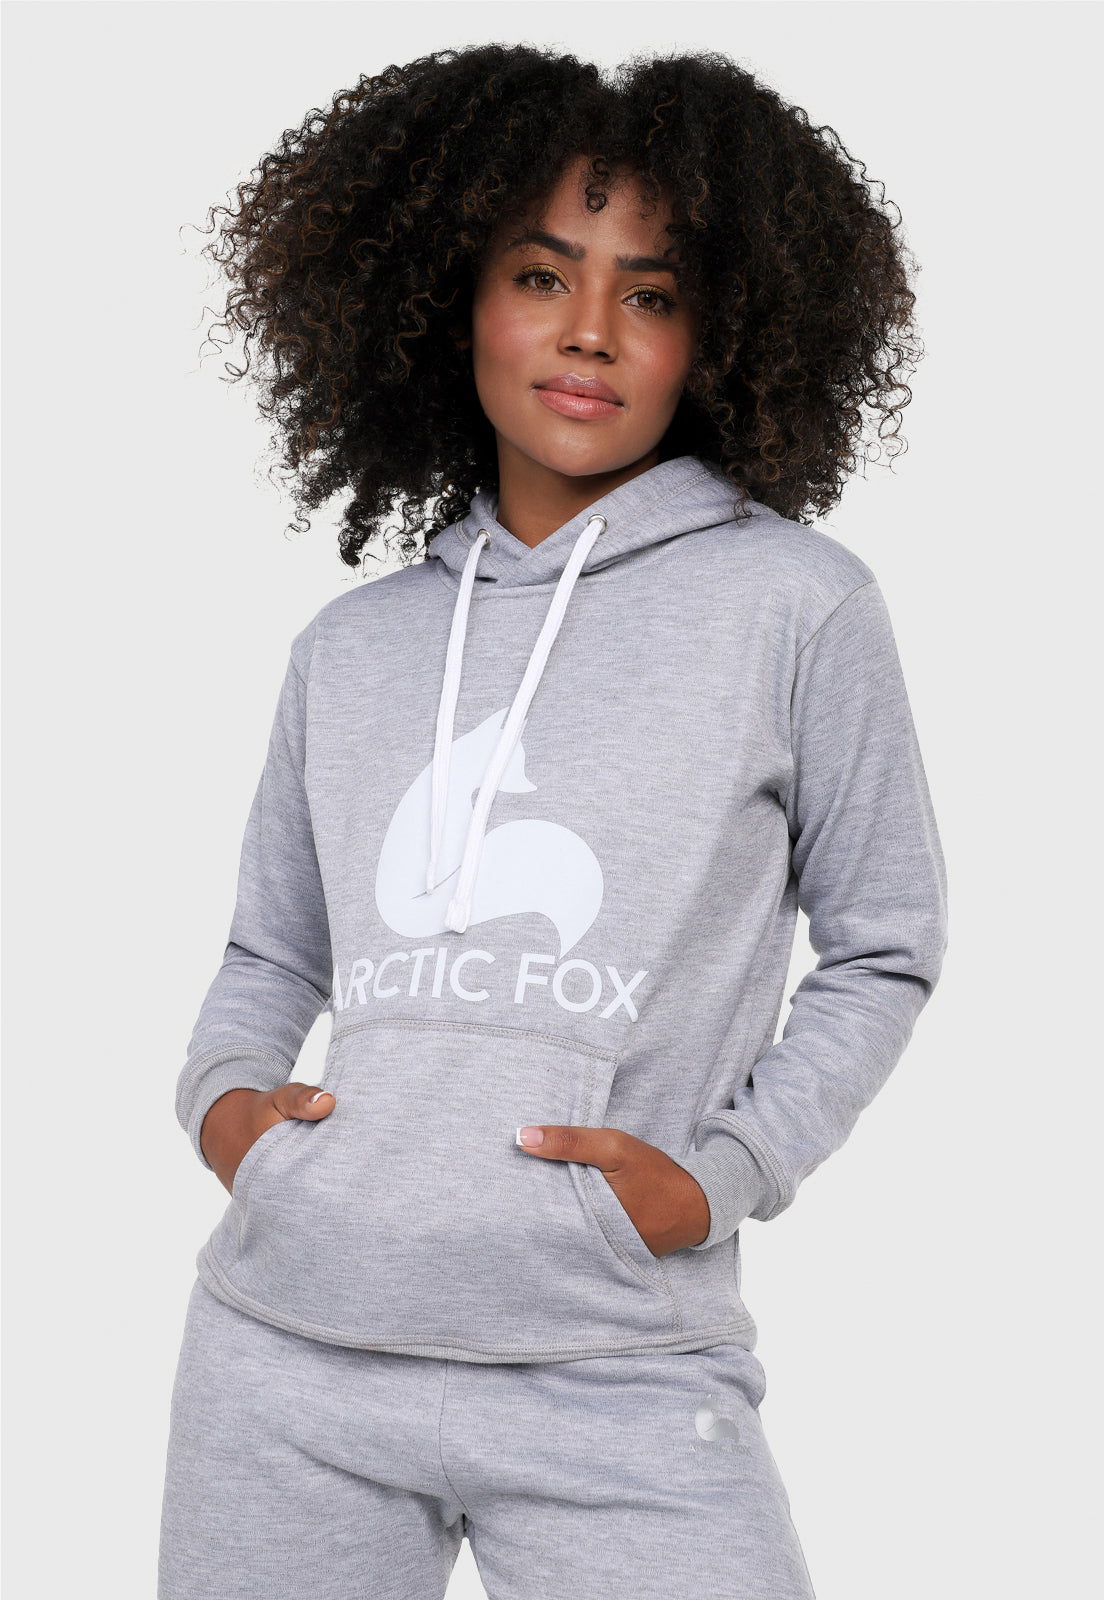 Detalle de mujer vistiendo la sudadera para mujer conjunto buzo hoodie y pantalón de sudadera gris jaspe. Lleva el zorro de Arctic Fox estampado en blanco al frente del buzo.